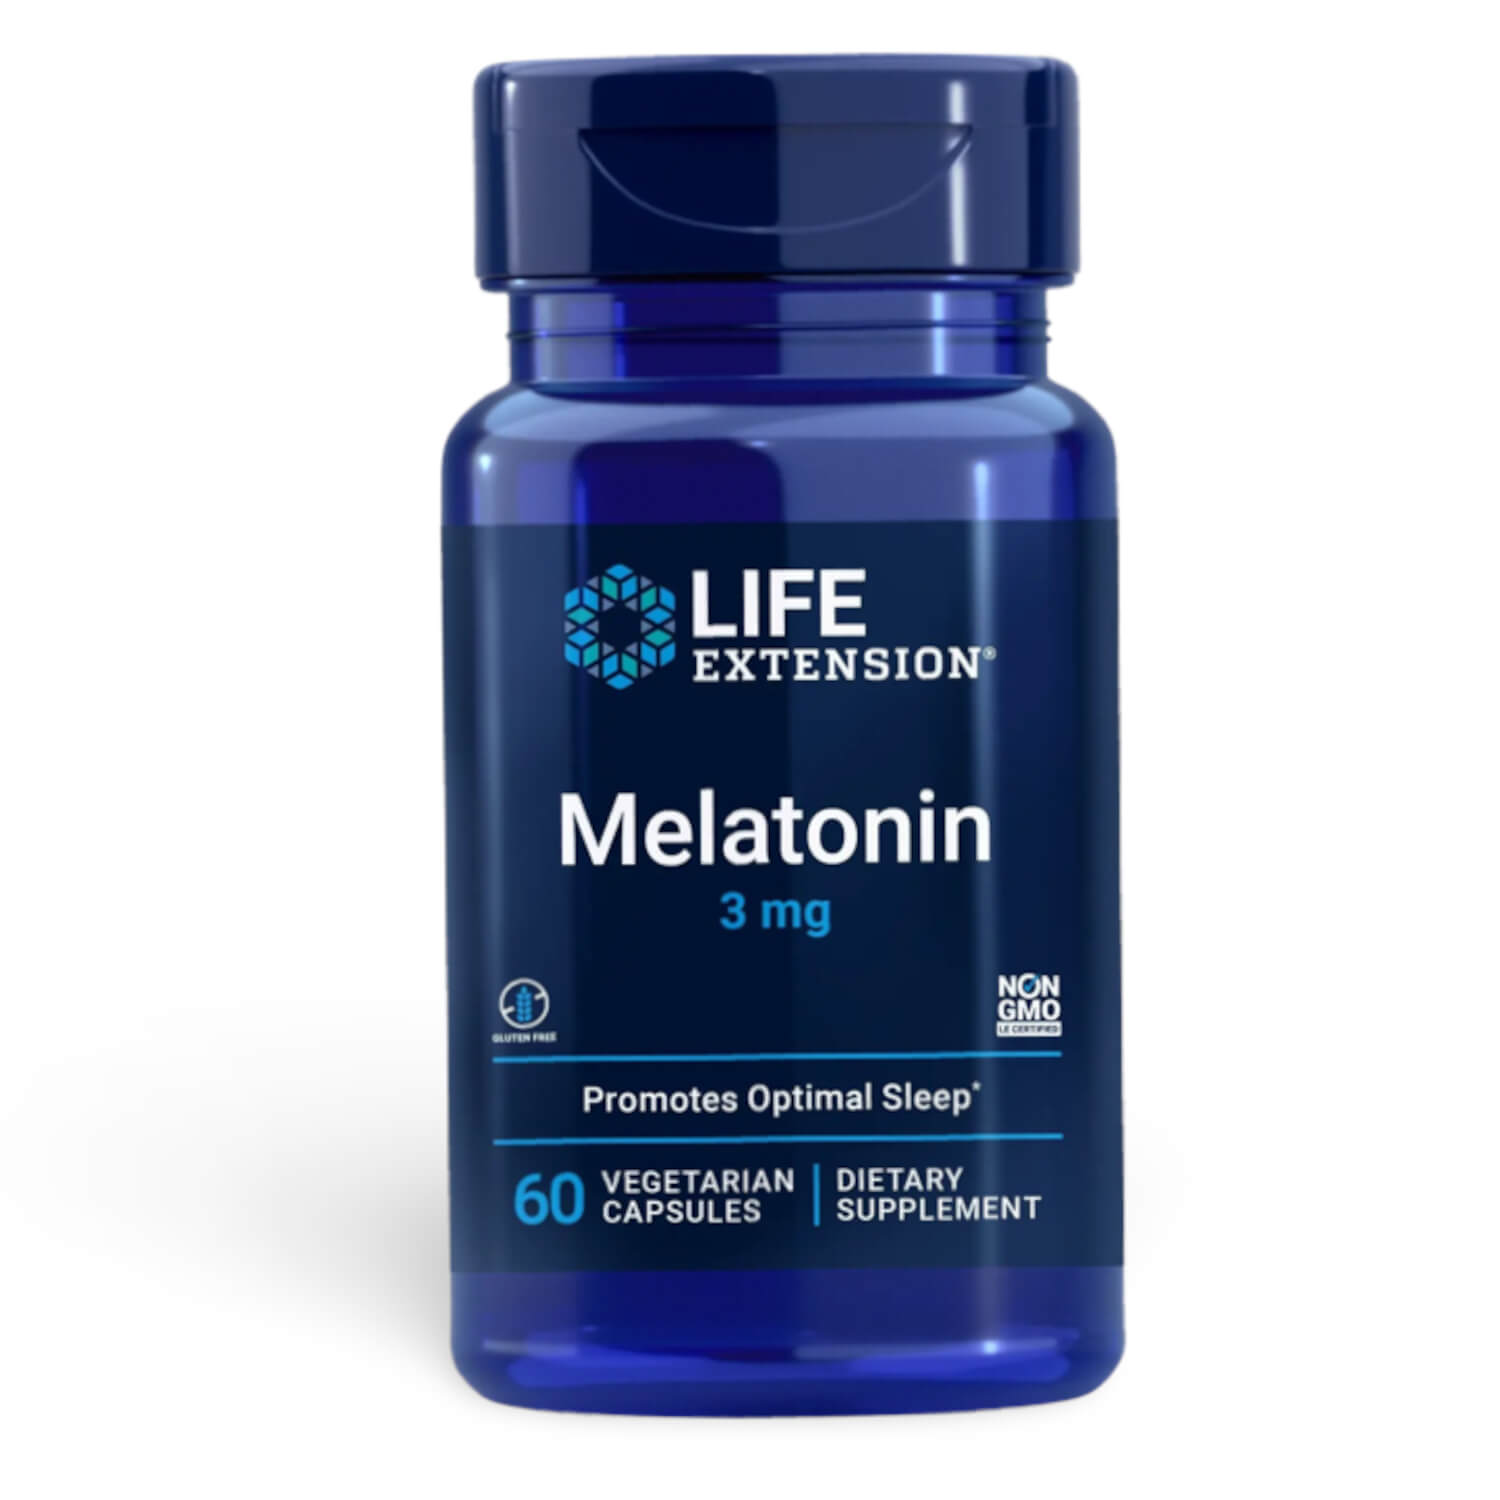 Melatonin 3 mg - Hj melatonindosis for svn og cellulr sundhed